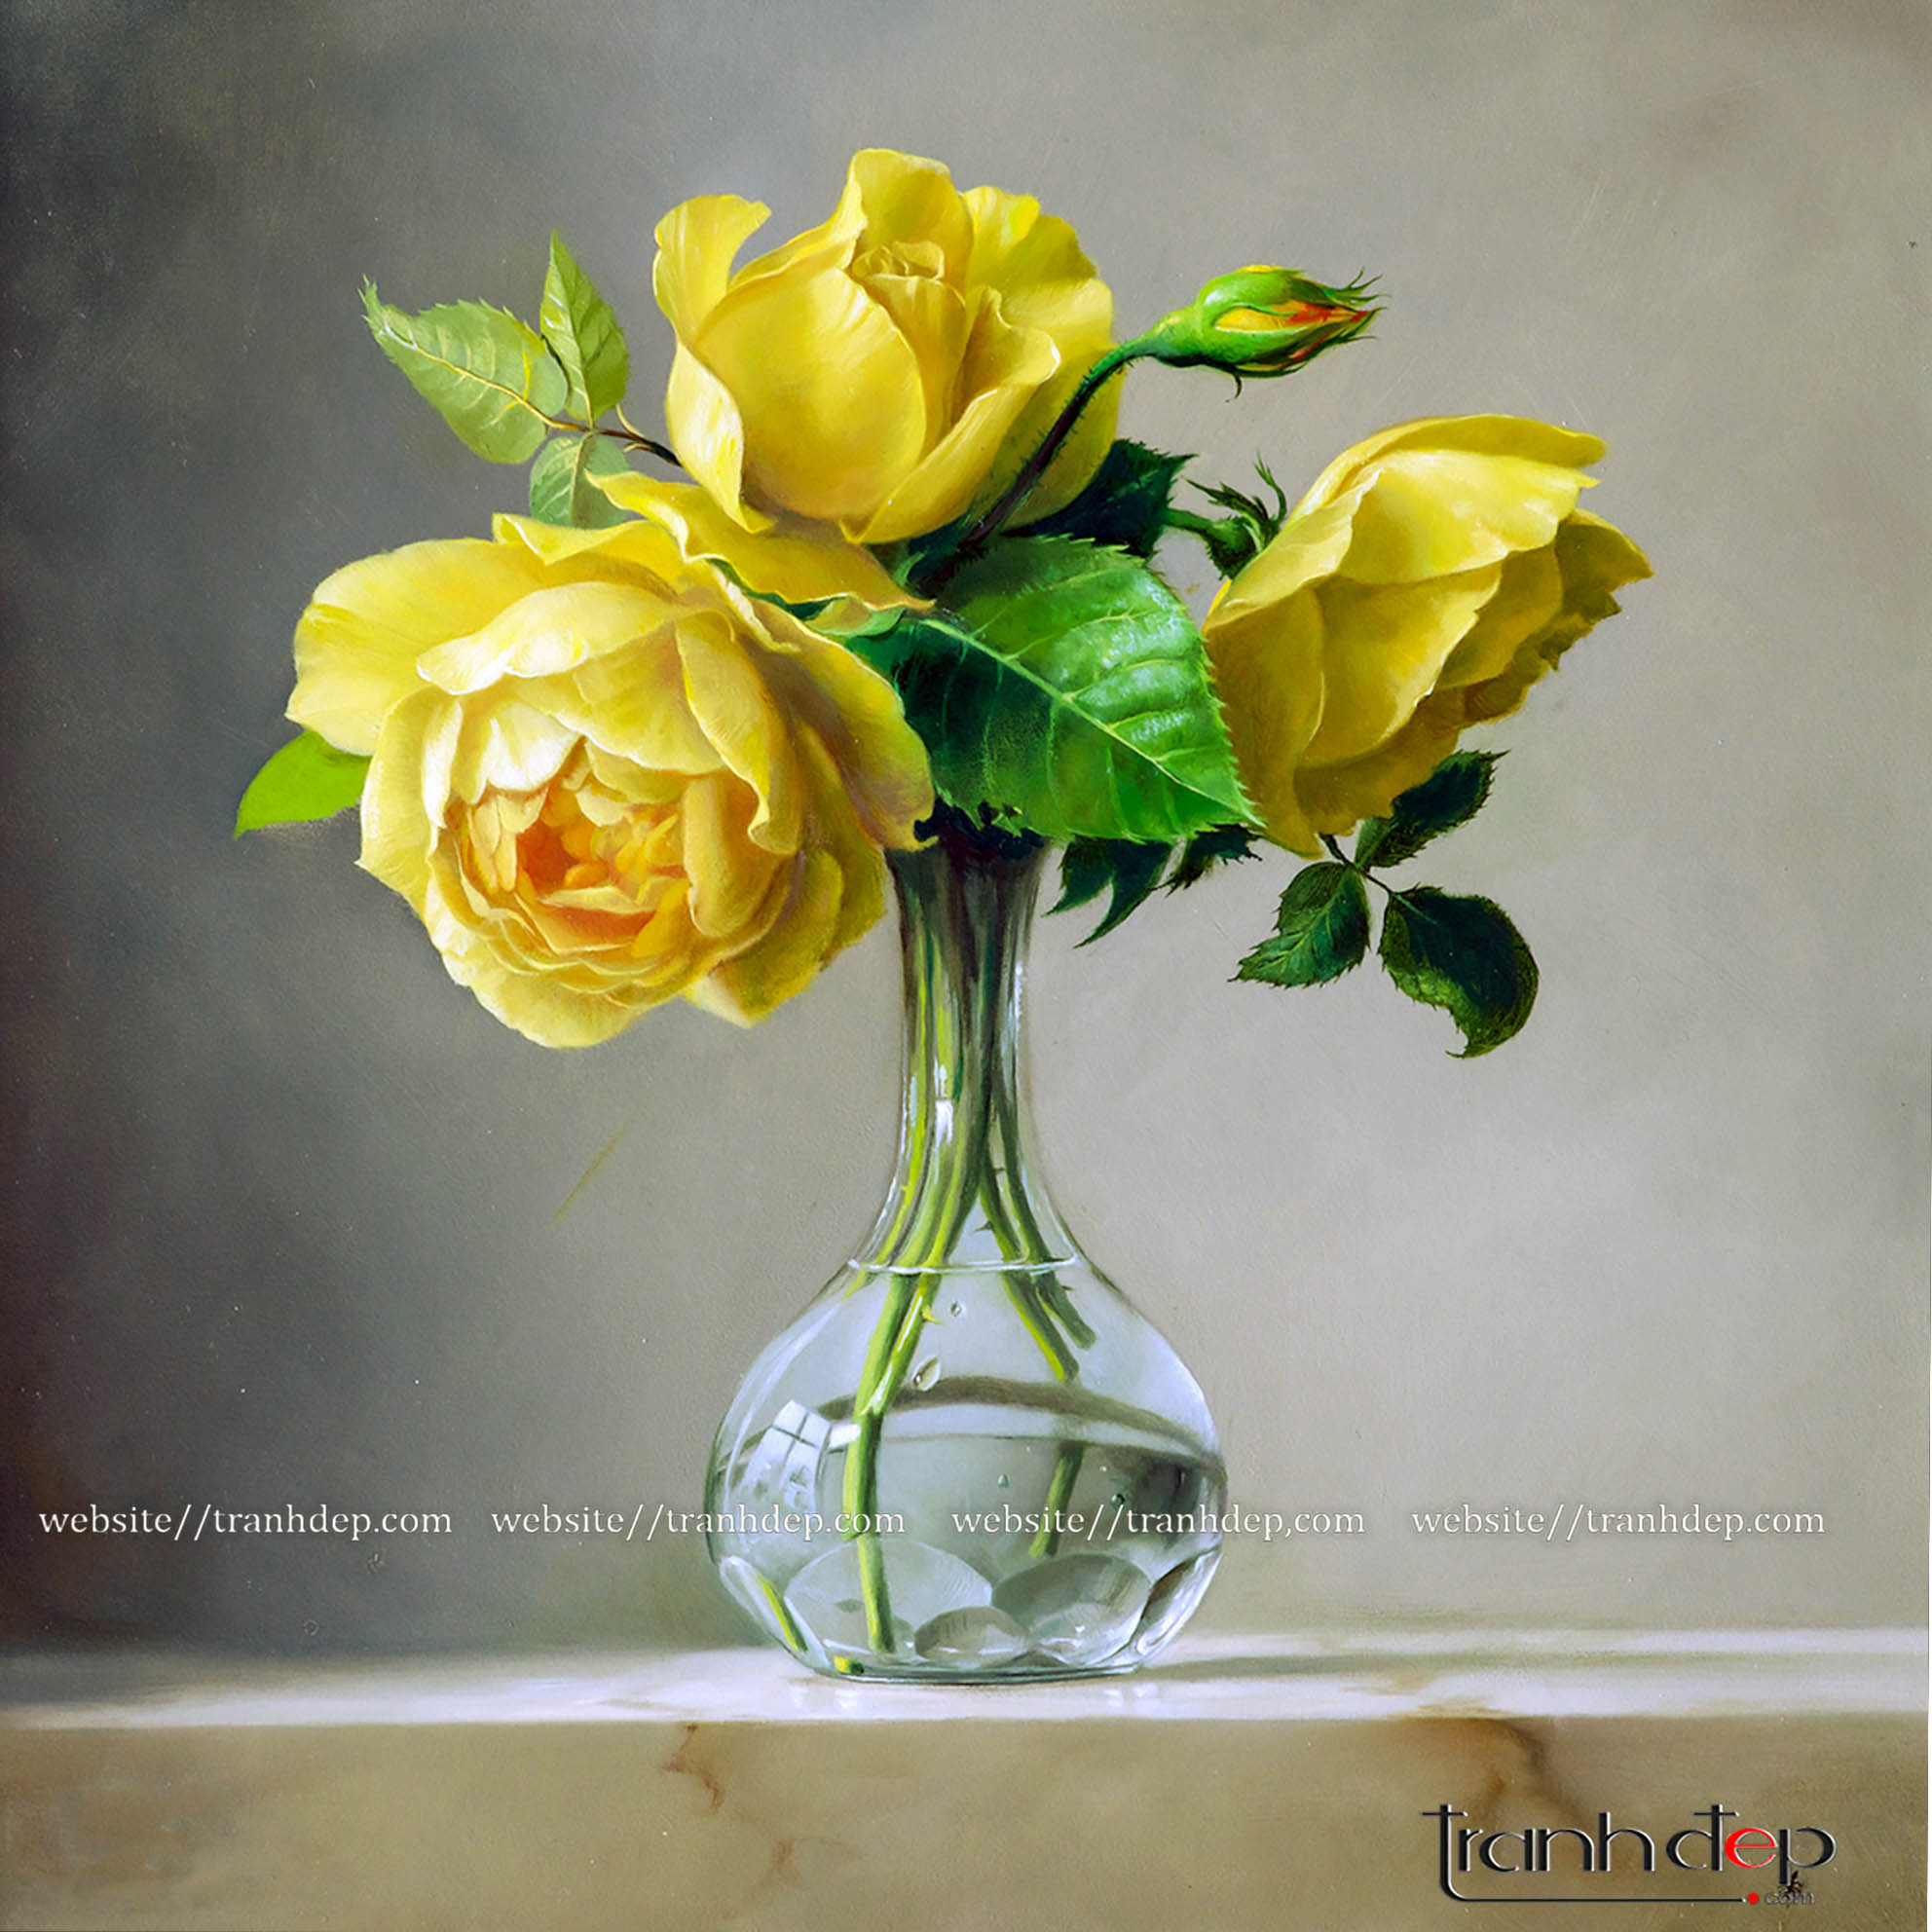 Vẽ tranh bằng màu vàng là một nghệ thuật, và khi đem hoa hồng vàng vào trong tranh thì nó sẽ trở nên độc đáo hơn bao giờ hết. Hãy cùng thưởng thức bức tranh vẽ hoa hồng vàng đầy cảm hứng và nghệ thuật này.